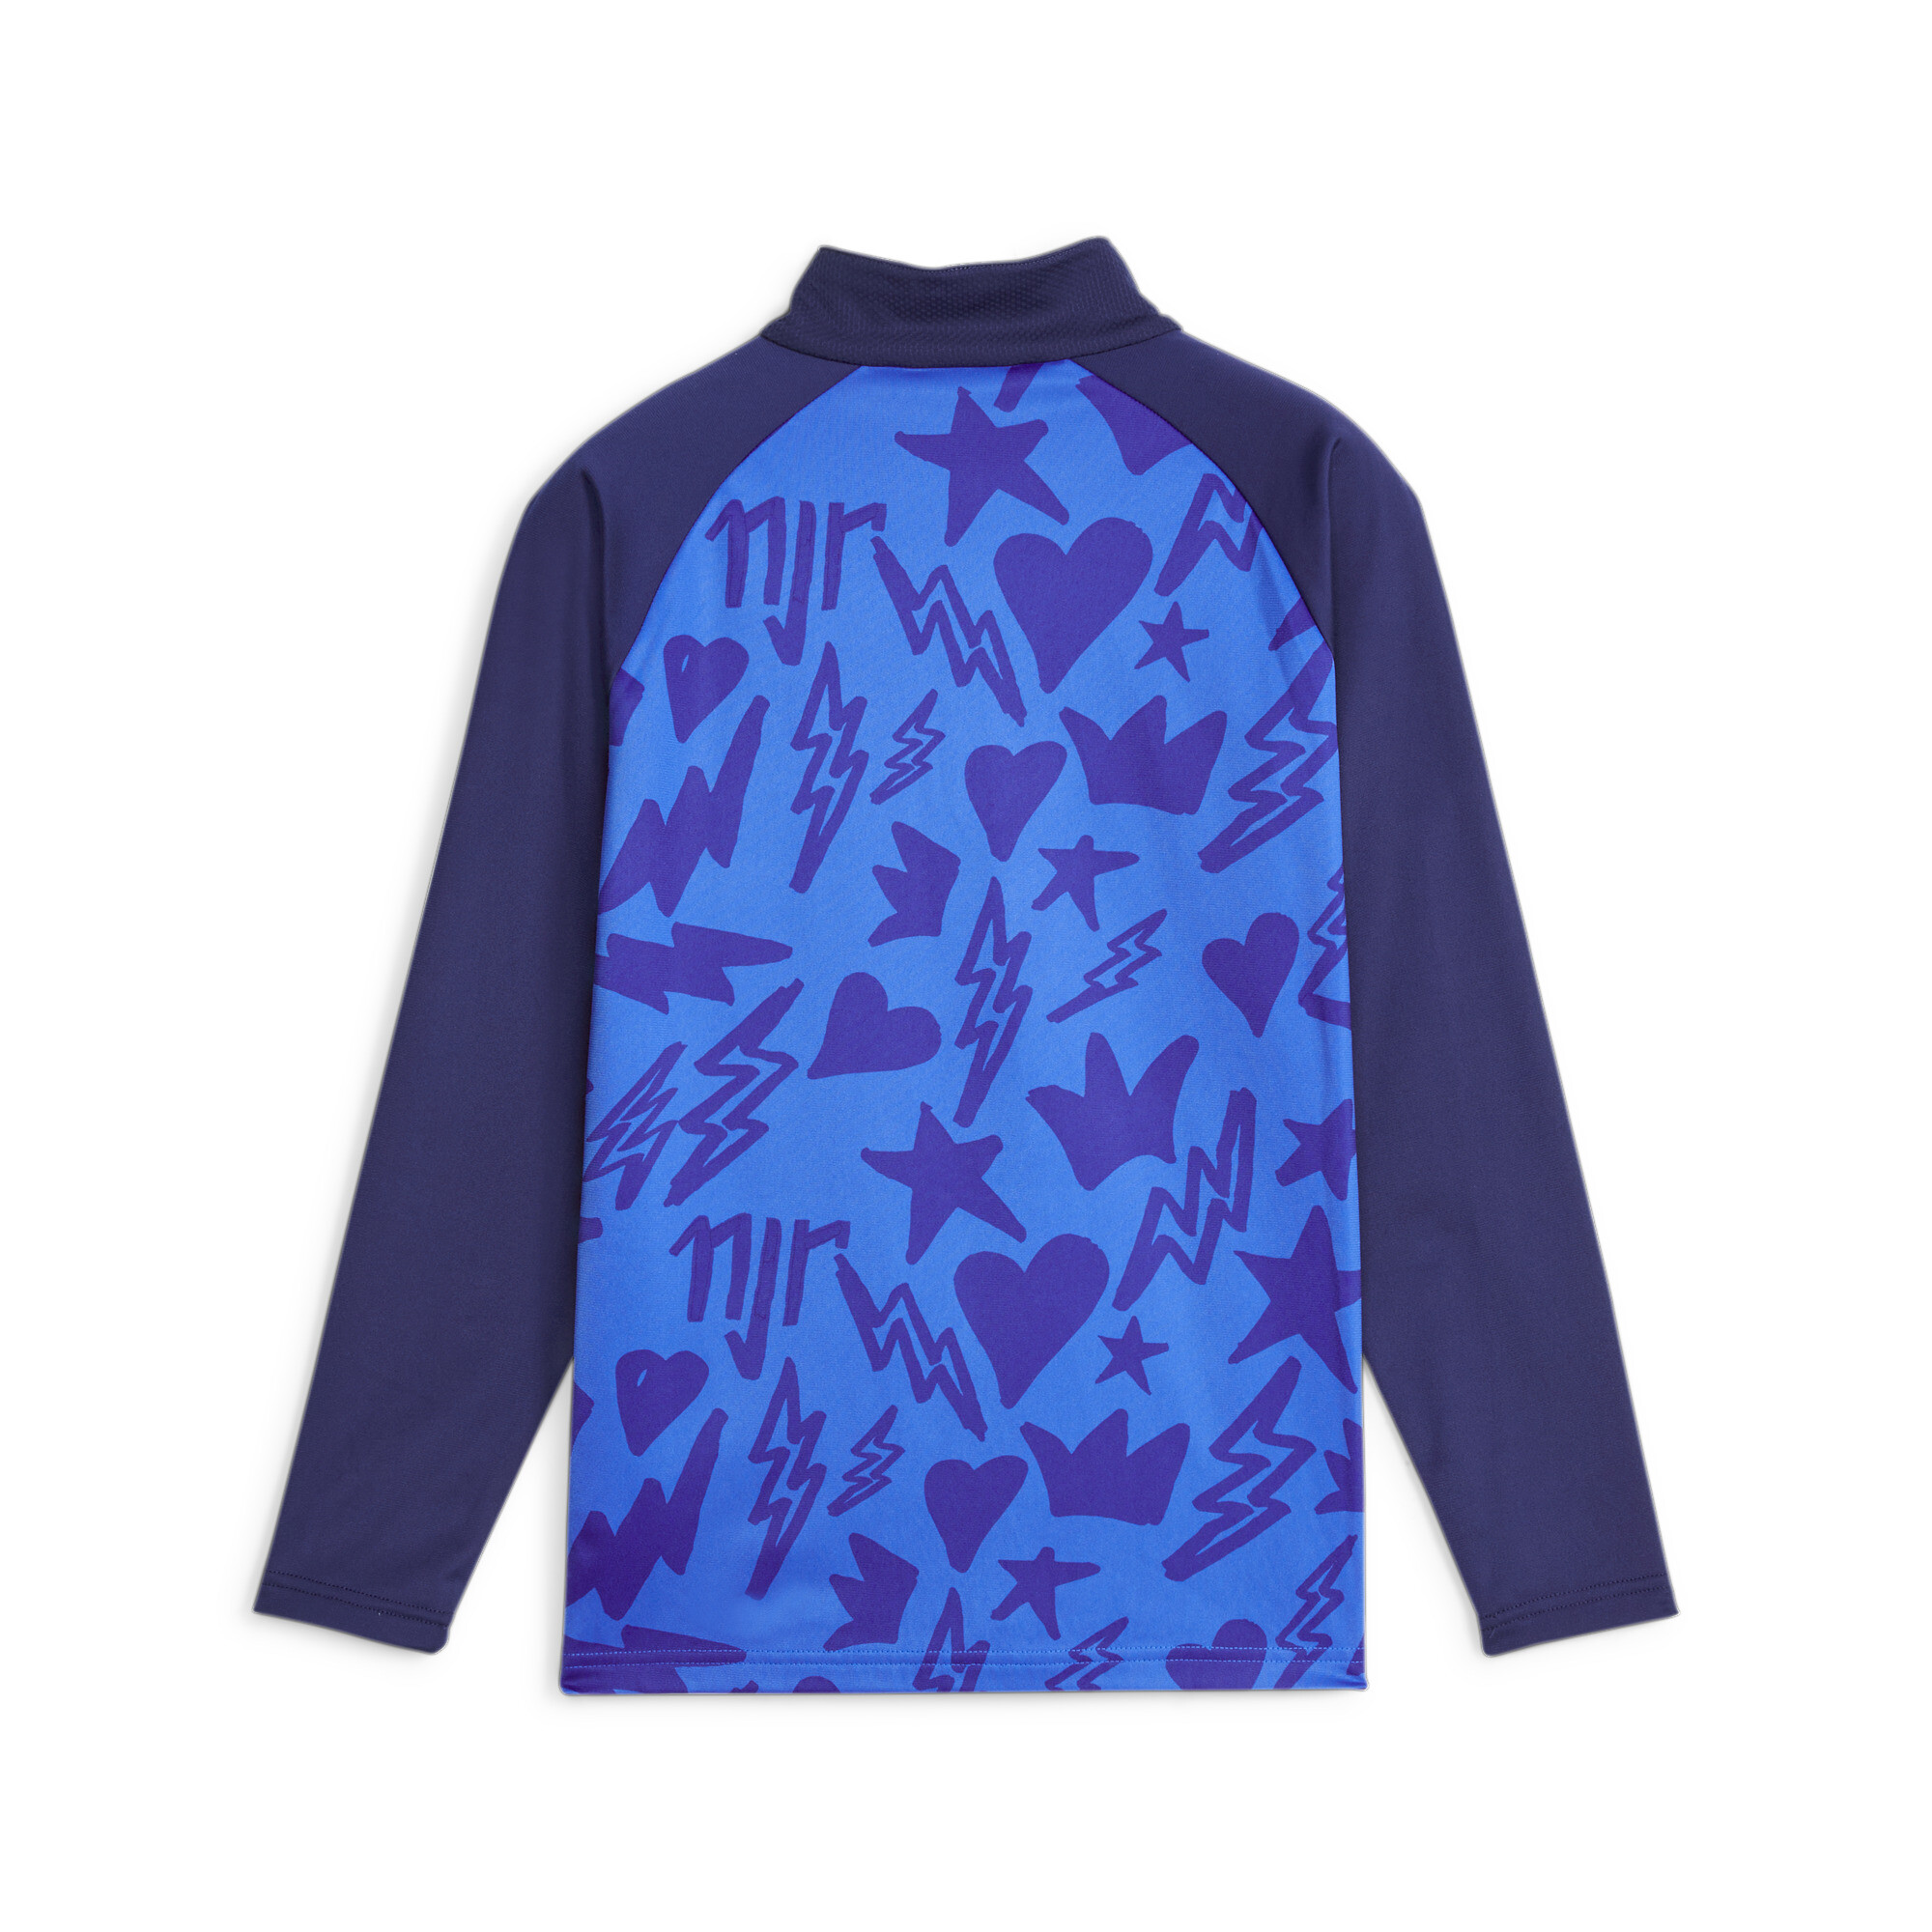 PUMA Neymar Jr Football Track Jacket In Blue, Size 9-10 Youth